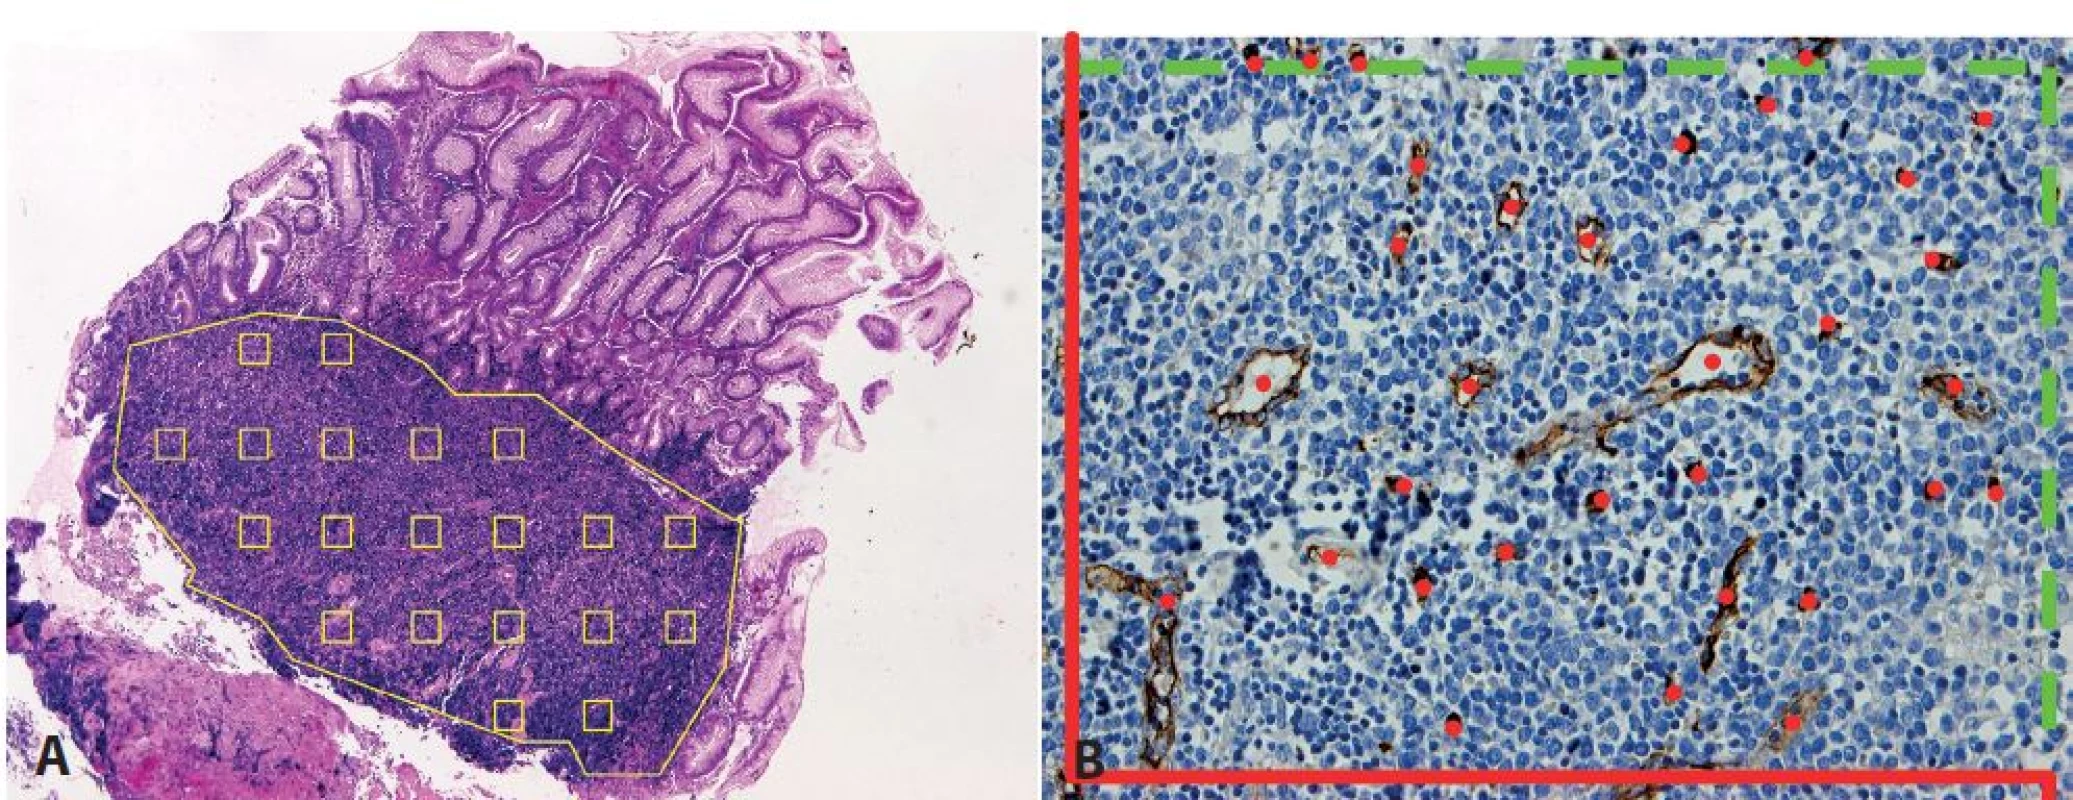 Stanovení mikrovaskulární denzity pomocí metody systematického náhodného výběru zorných polí v definované oblasti. &lt;b&gt;A&lt;/b&gt;: vzorkování v mantle cell lymfomu (MCL) infiltrujícím sliznici tlustého střeva (hematoxylin-eosin, zvětšení 50x). &lt;b&gt;B&lt;/b&gt;: označení počítaných profilů mikrocév v jednom zorném poli MCL v lymfatické uzlině s využitím počítacího rámečku pro tzv. nevychýlené počítání (42), který sestává ze zakázaných linií (červeně, protínající cévní profily nejsou započítány) a povolených linií (zeleně přerušovaně, dotýkající se cévní profily jsou započítány) (protilátka CD34, zvětšení 200x).